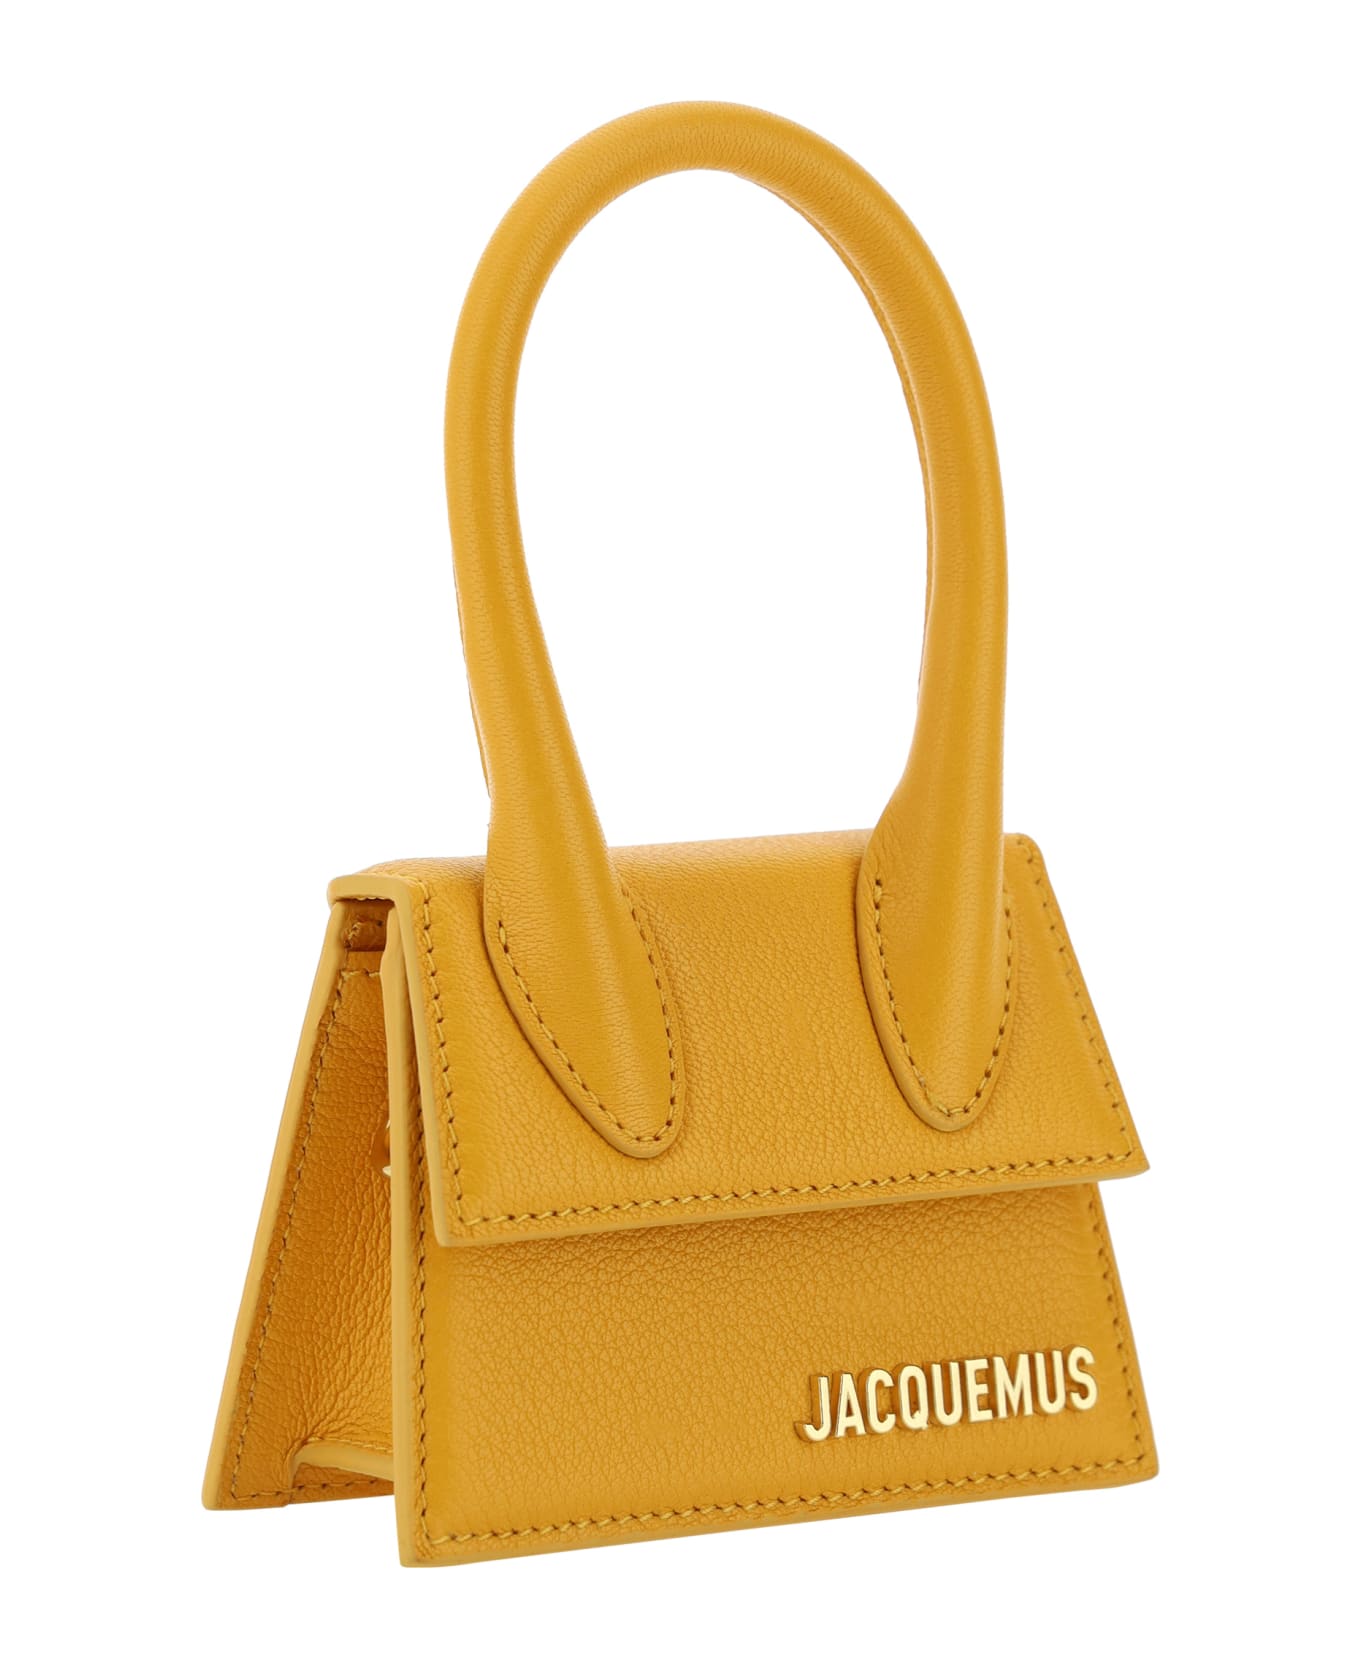 Jacquemus Le Chiquito Handbag - Dark Orange